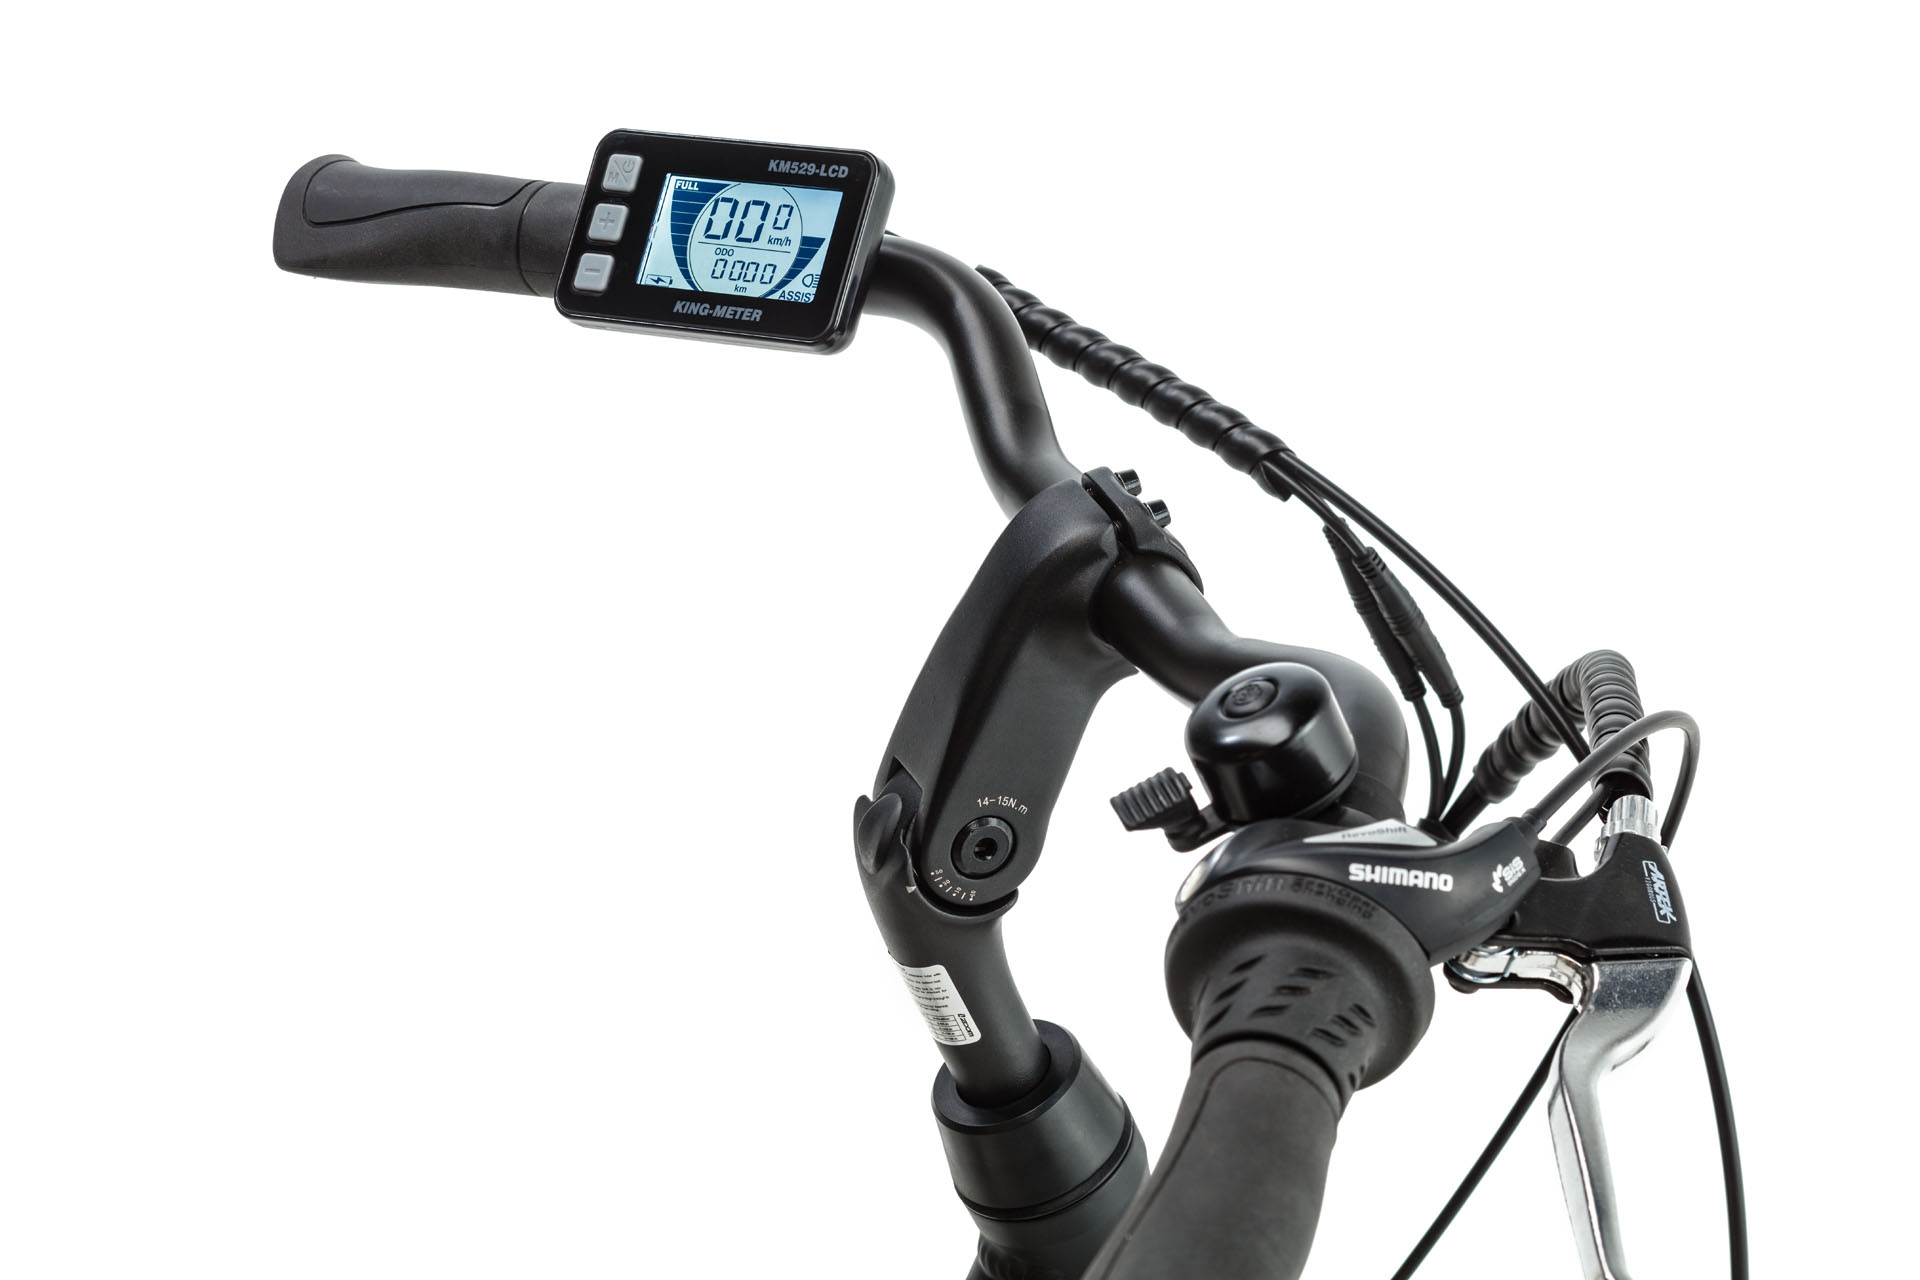 Productfotografie Lidl e-bikes